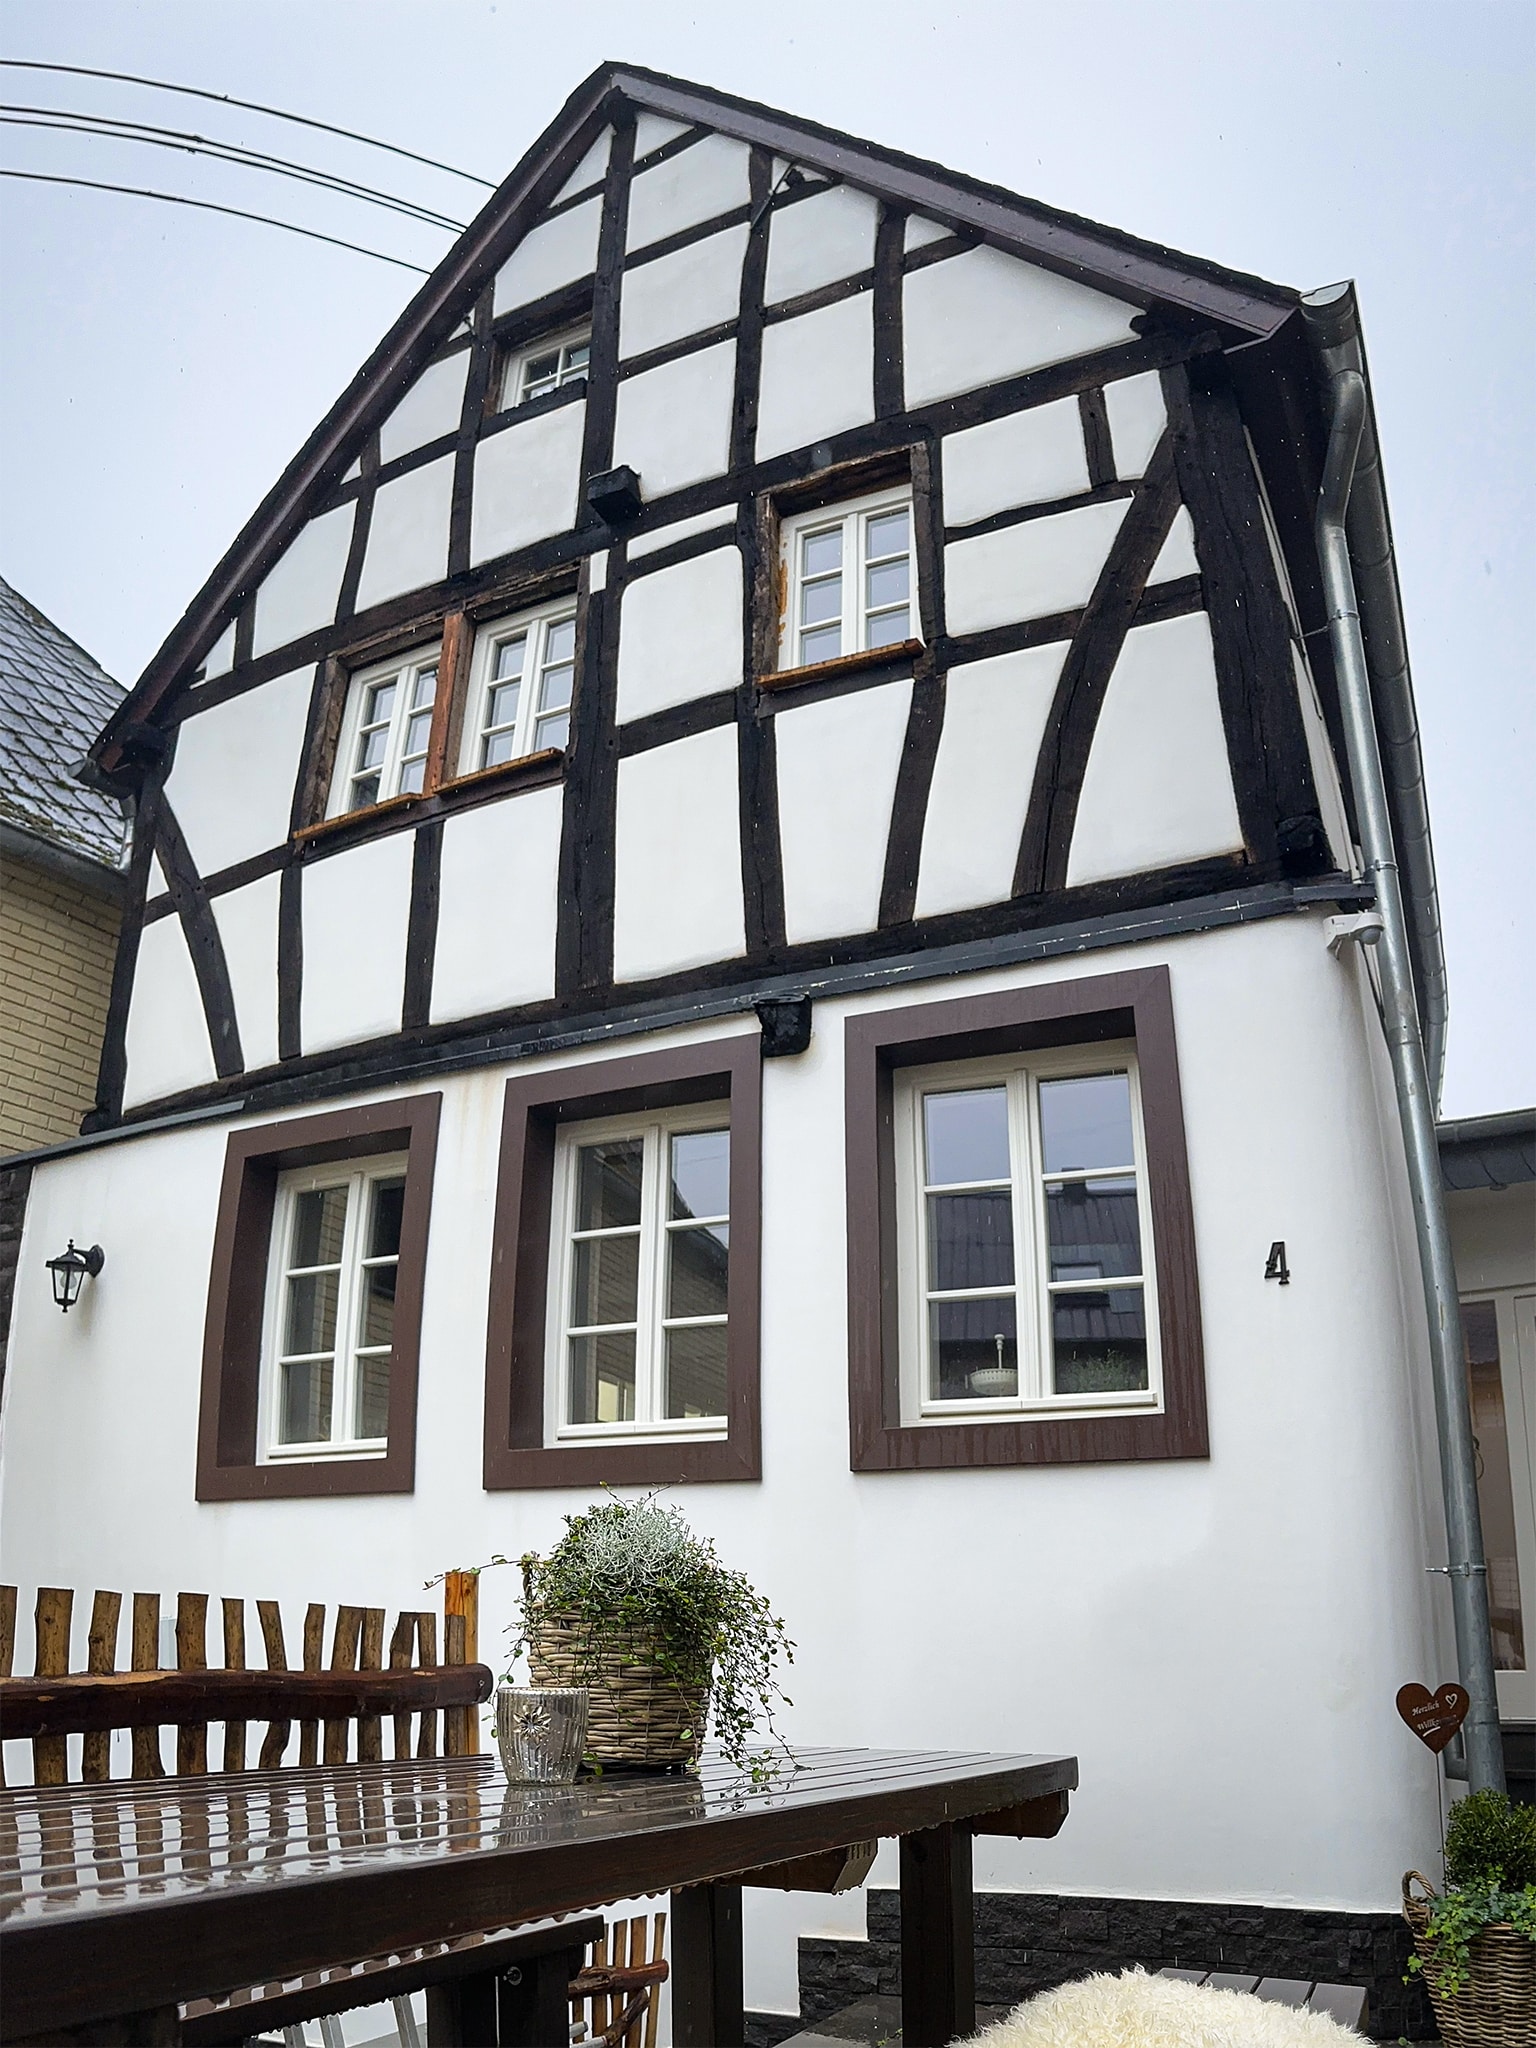 Aussenansciht Ferienhaus "Rawerts Refugium" in der Eifel